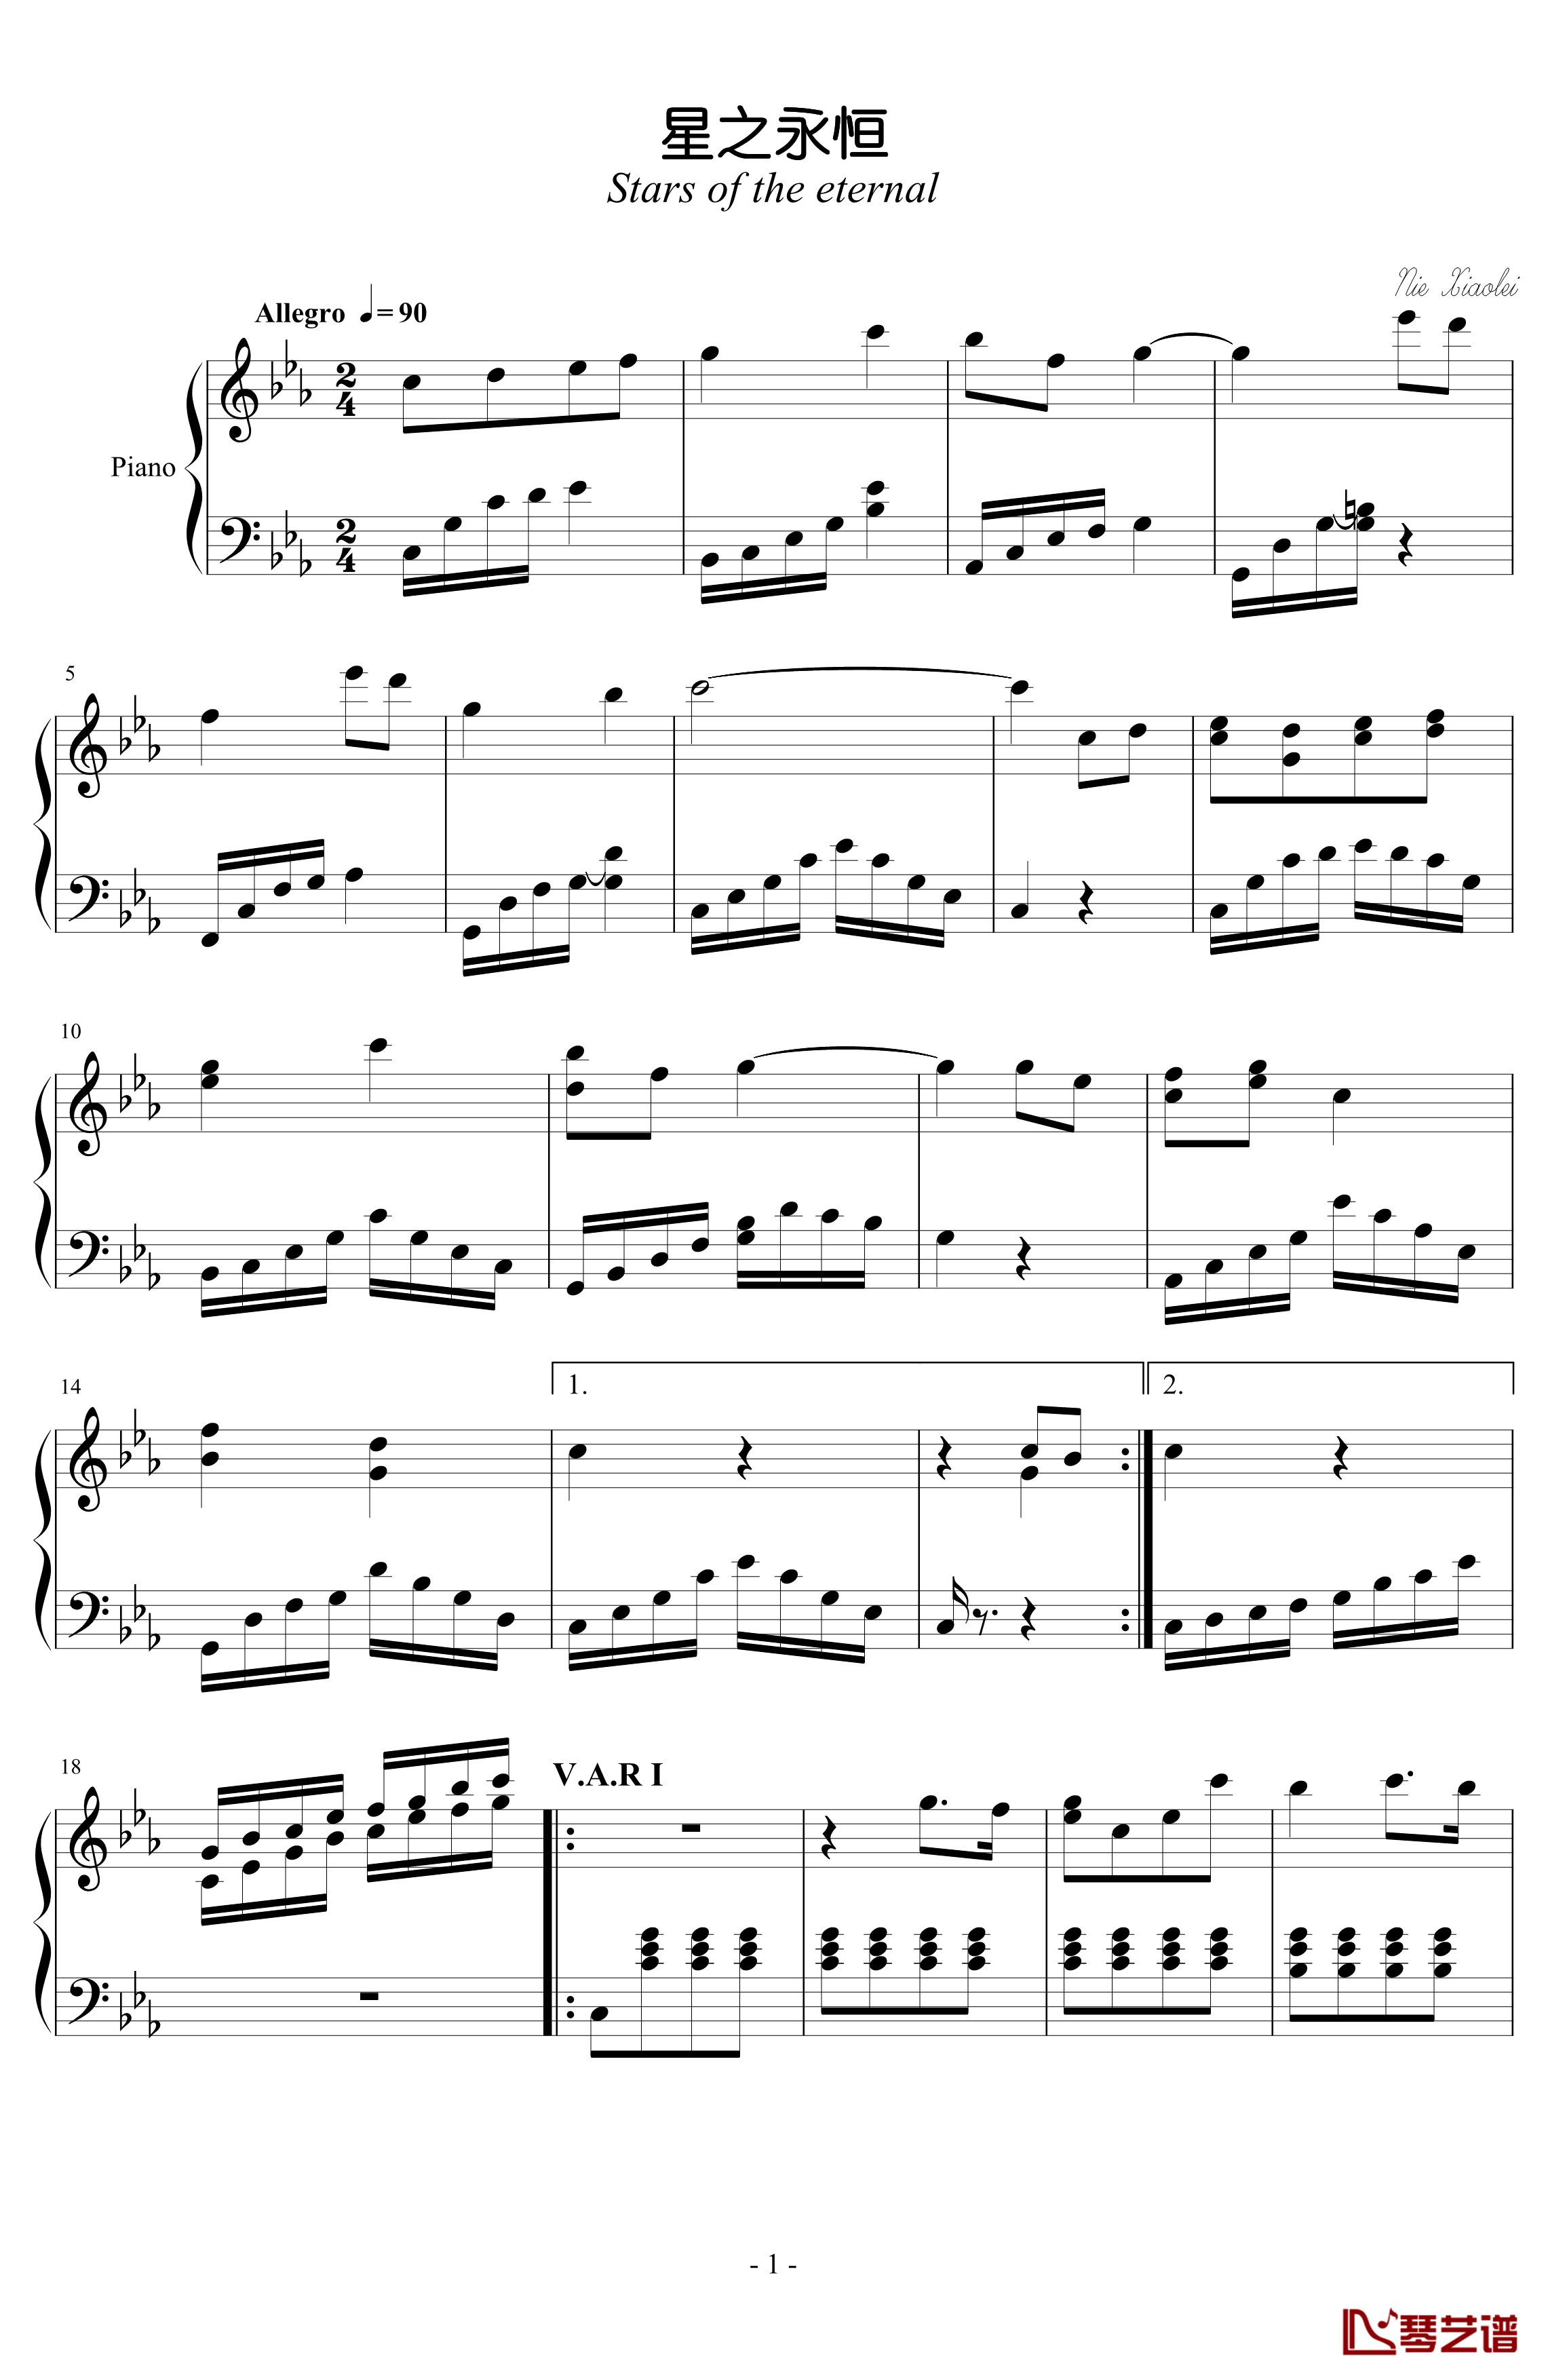 星之永恒钢琴谱-nzh19341